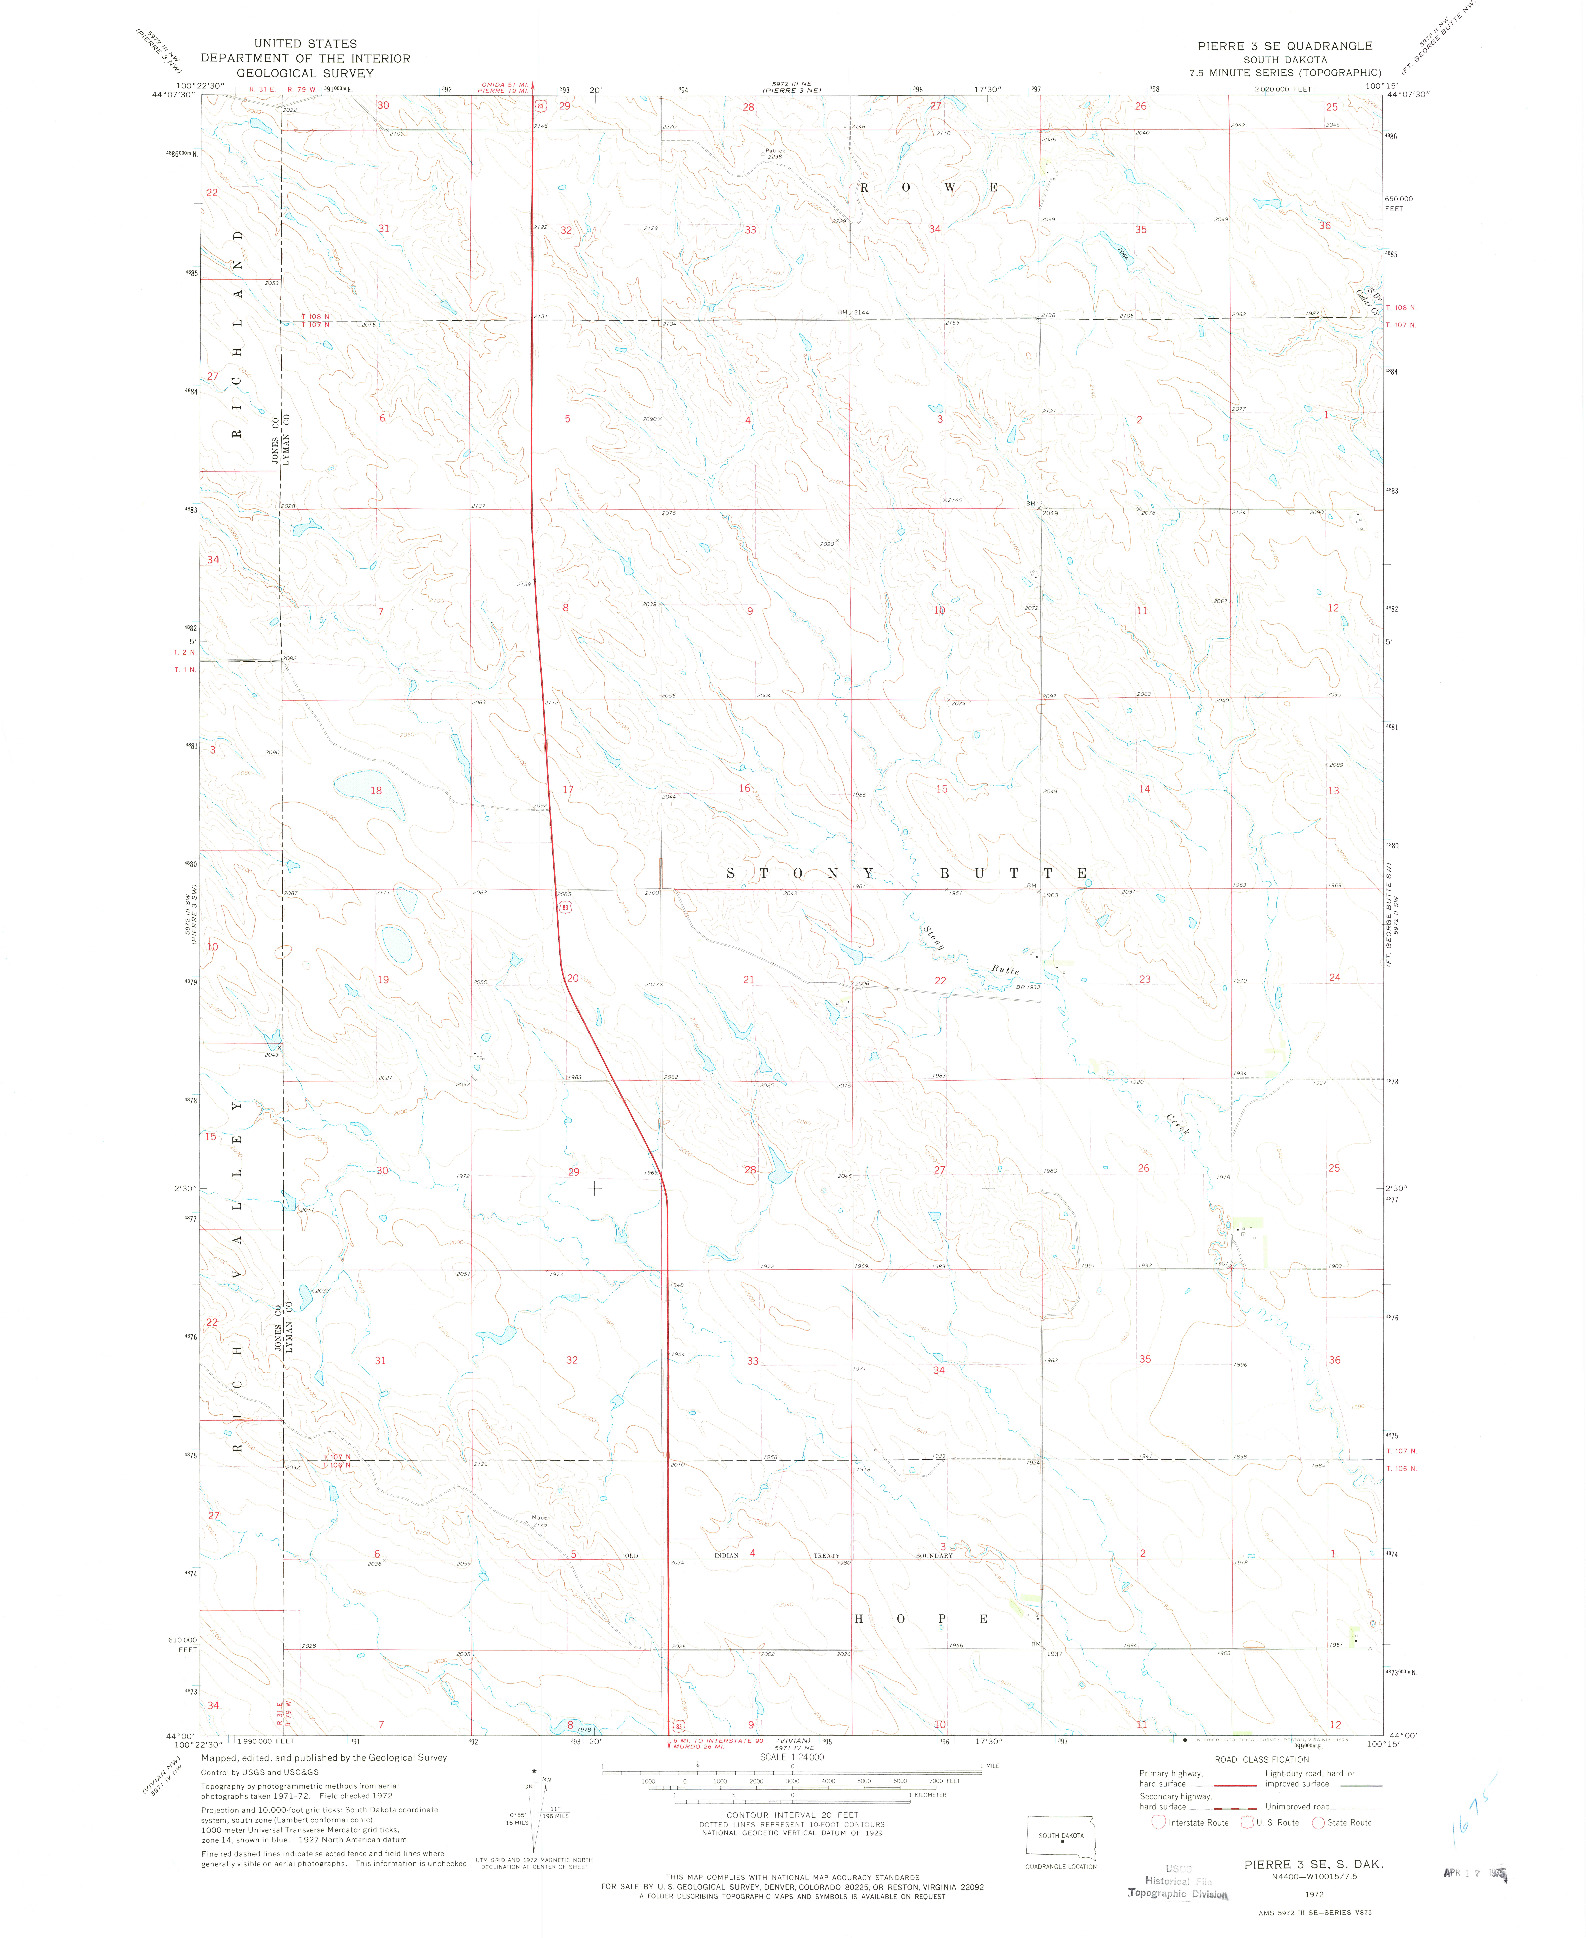 USGS 1:24000-SCALE QUADRANGLE FOR PIERRE 3 SE, SD 1972